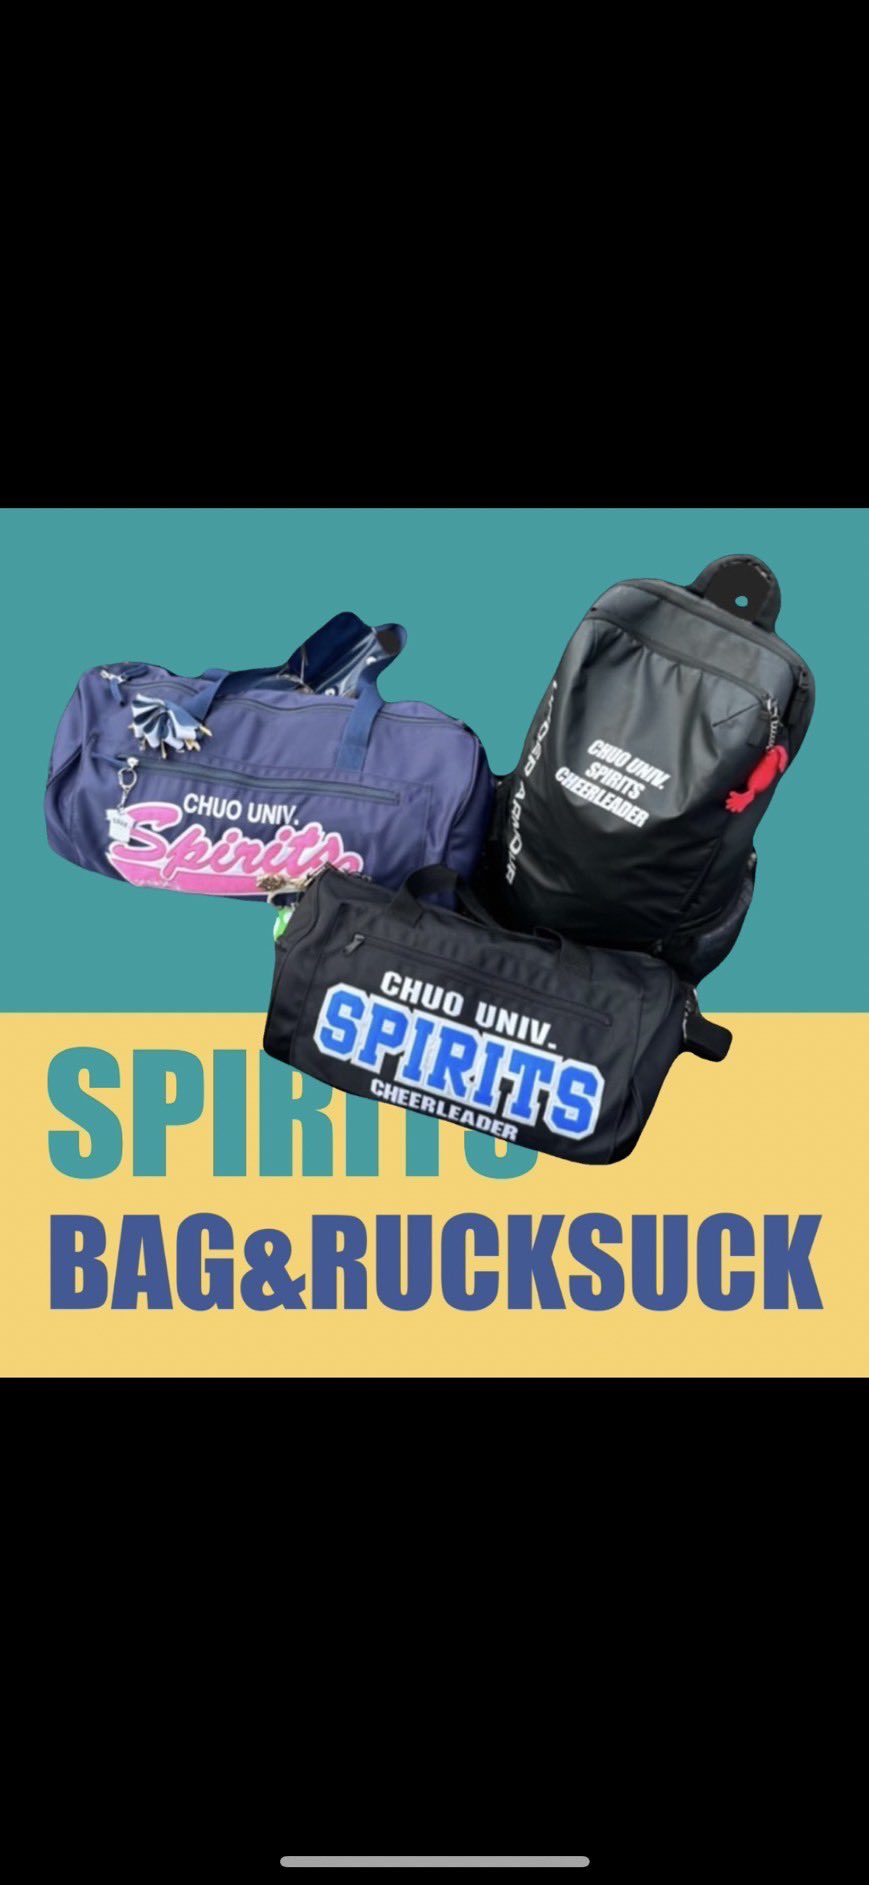 中央大学応援団 チアリーディング部 SPIRITS on Twitter: "【バッグ】 本日はバッグの紹介です！ SPIRITSには大バッグ